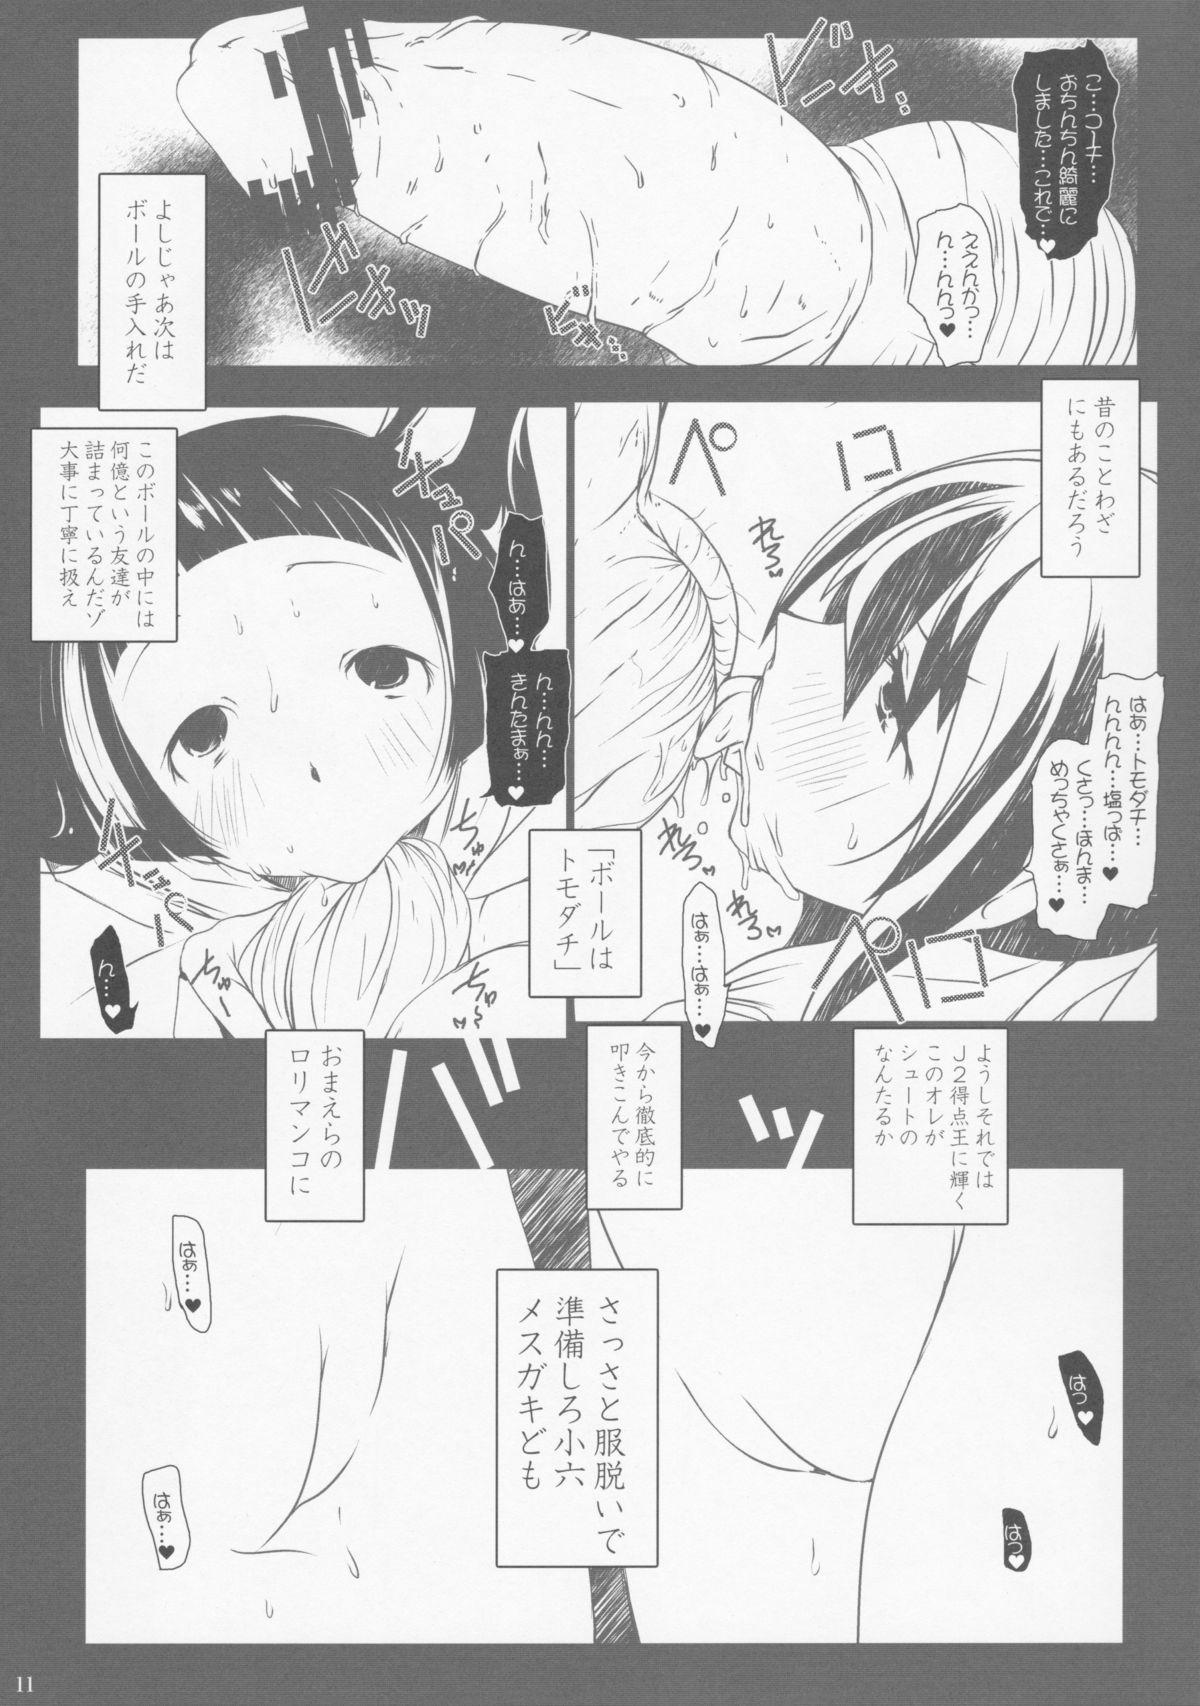 Tats LoliMAGA - Bakemonogatari Ginga e kickoff Hot Wife - Page 10